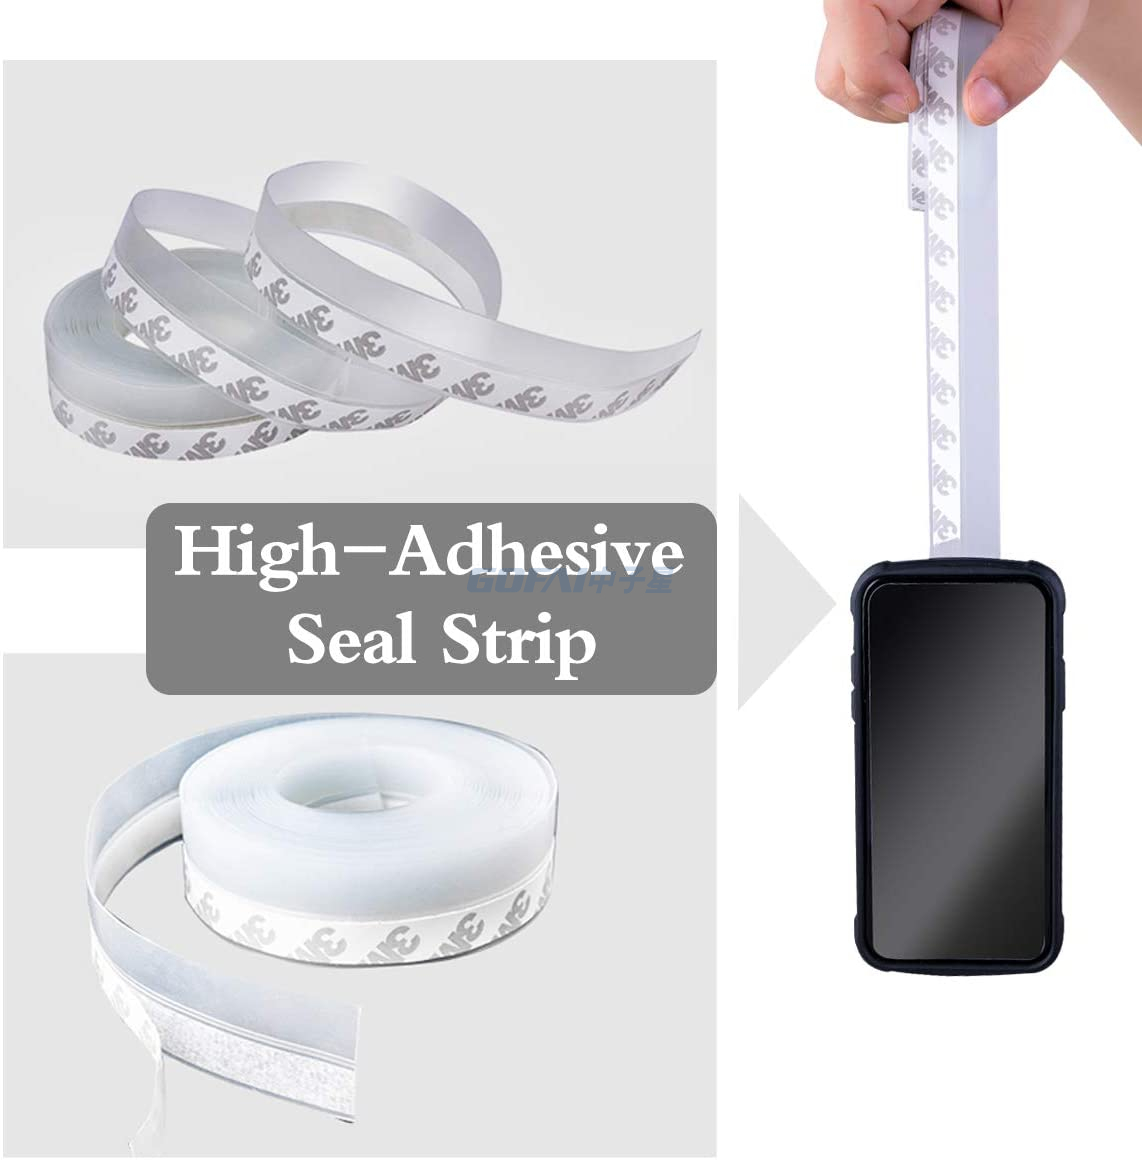 Self adhesive seal strip (5)